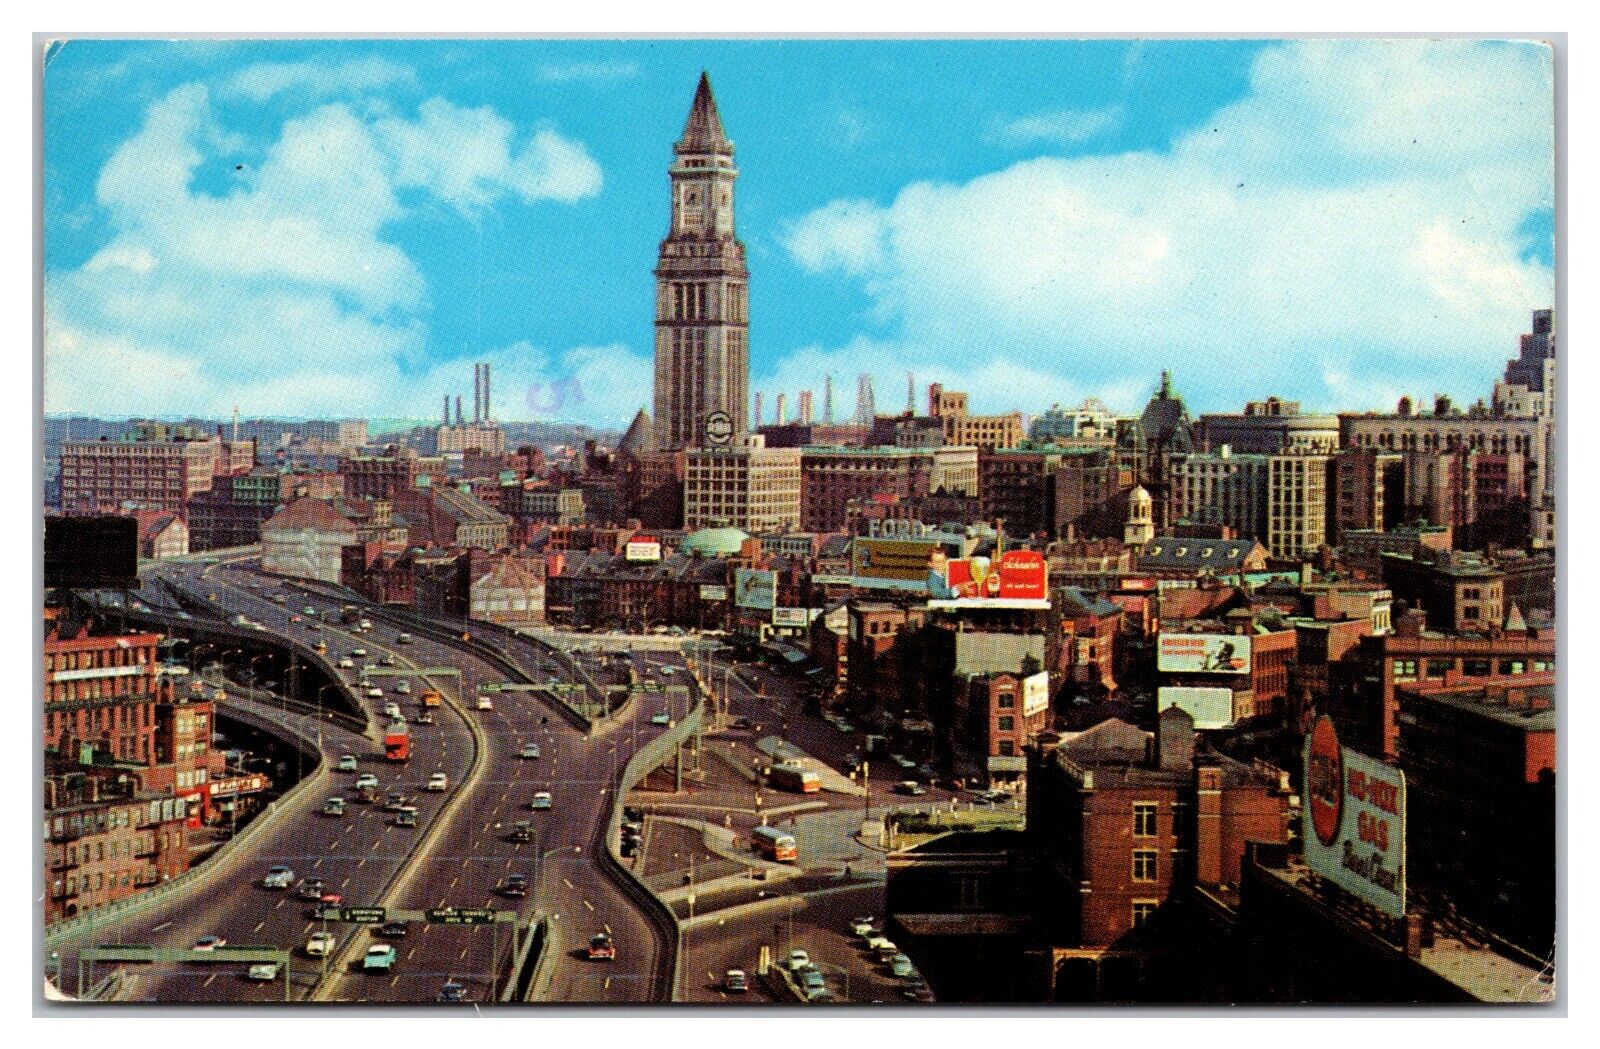 Custom House Tower Boston, Massachusetts Postcard